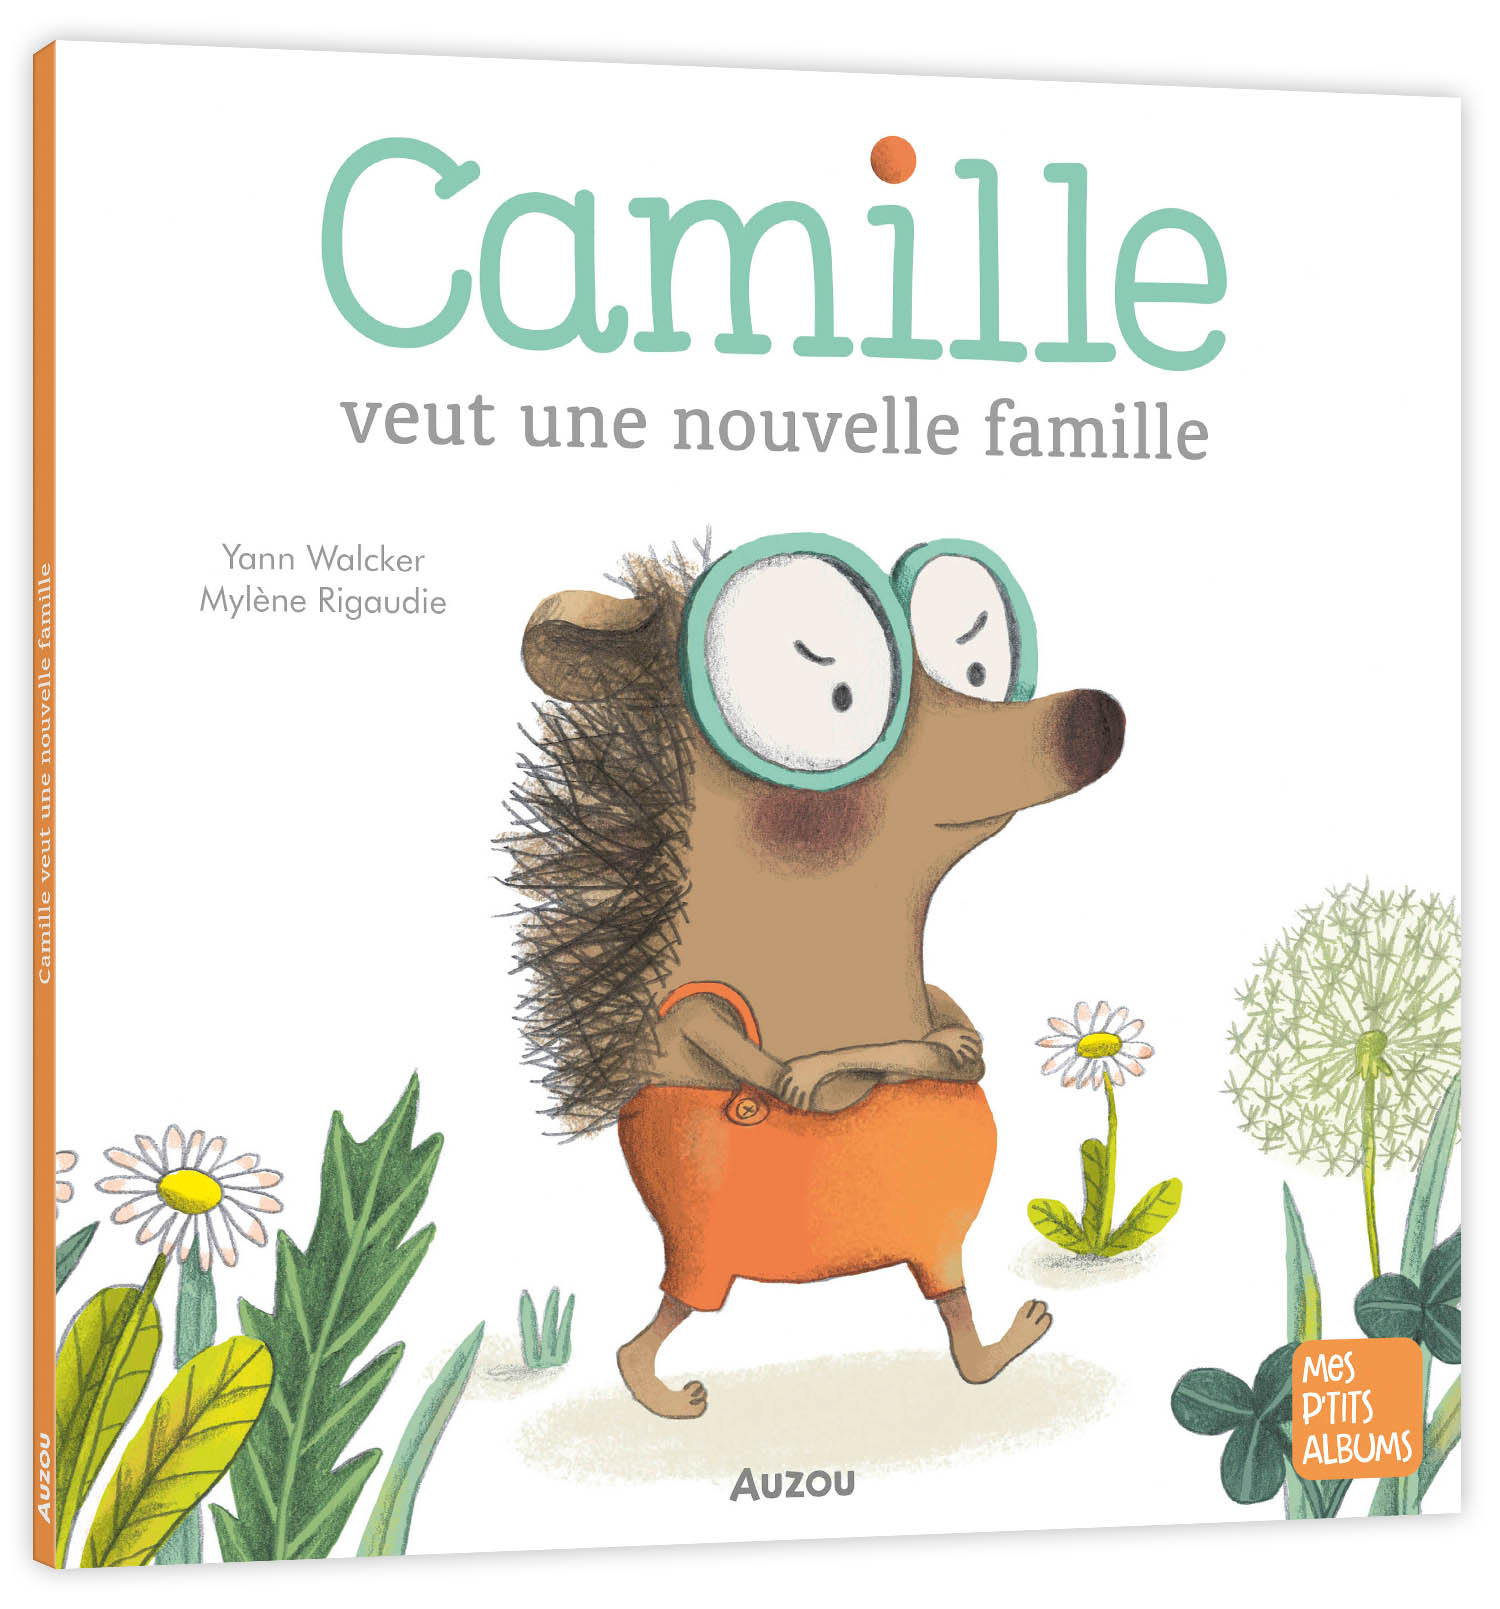 Camille veut une nouvelle famille